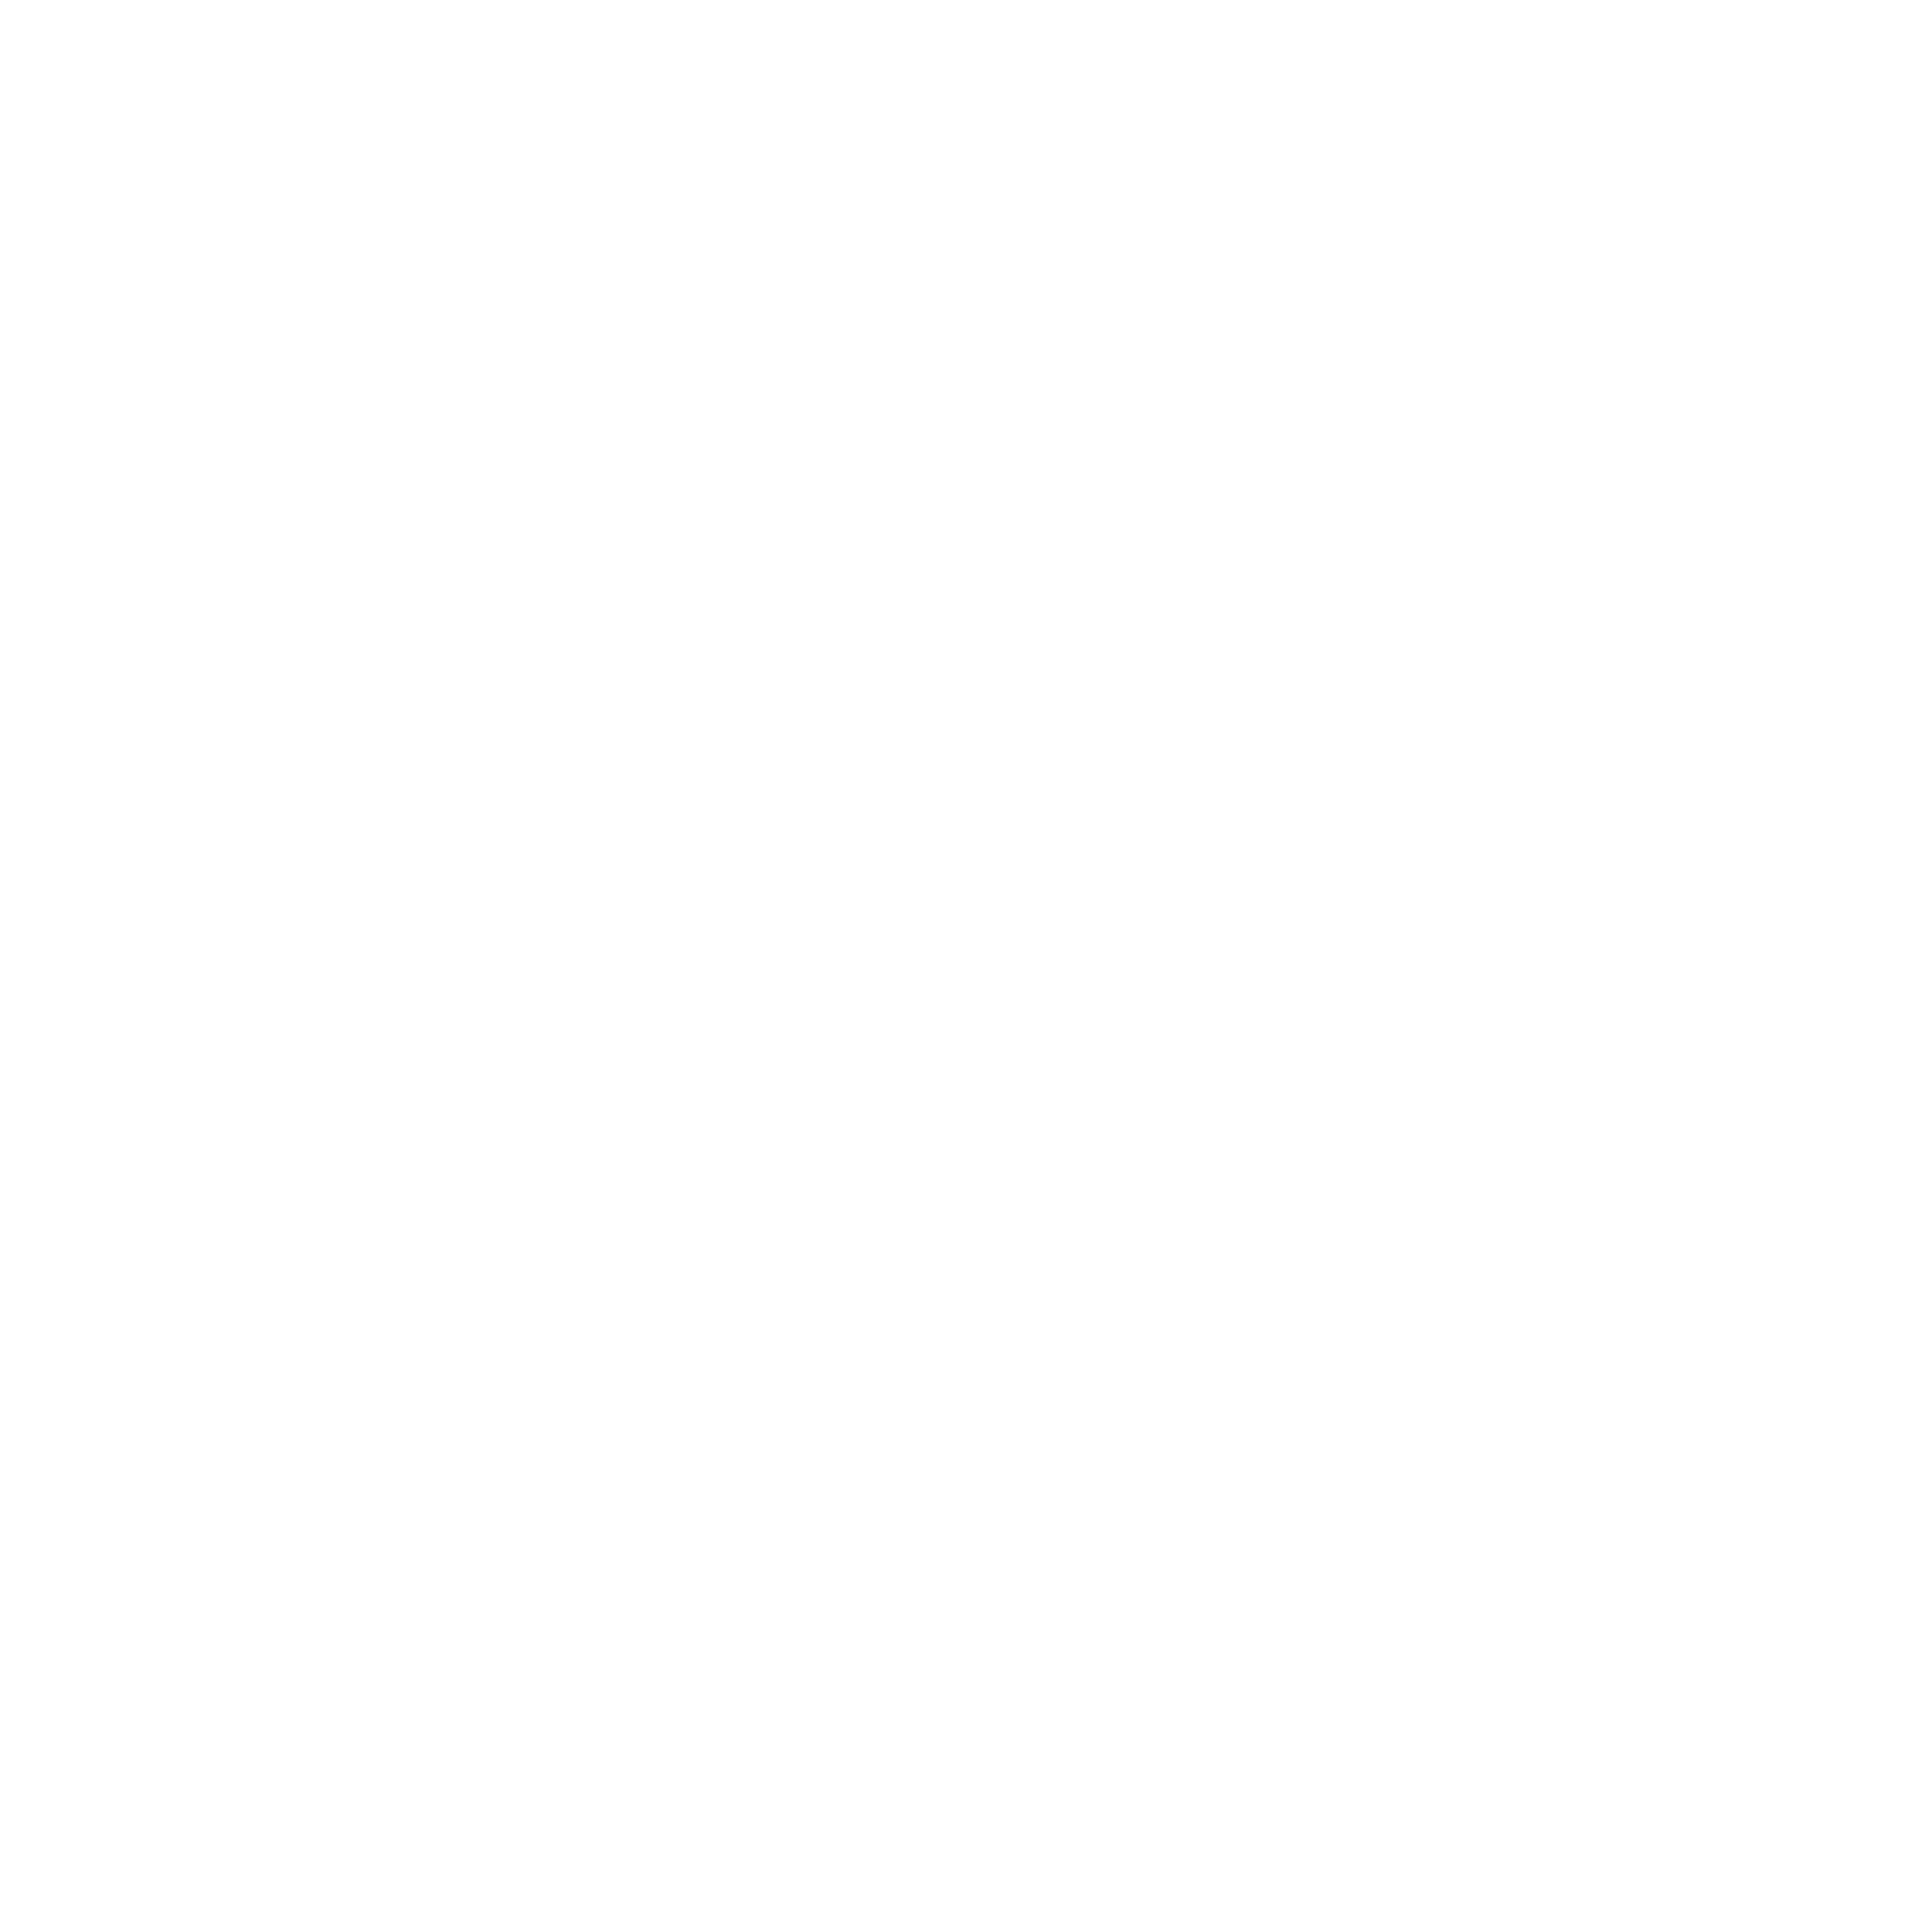 Timotei Logo - Timotei Logo PNG Transparent & SVG Vector - Freebie Supply